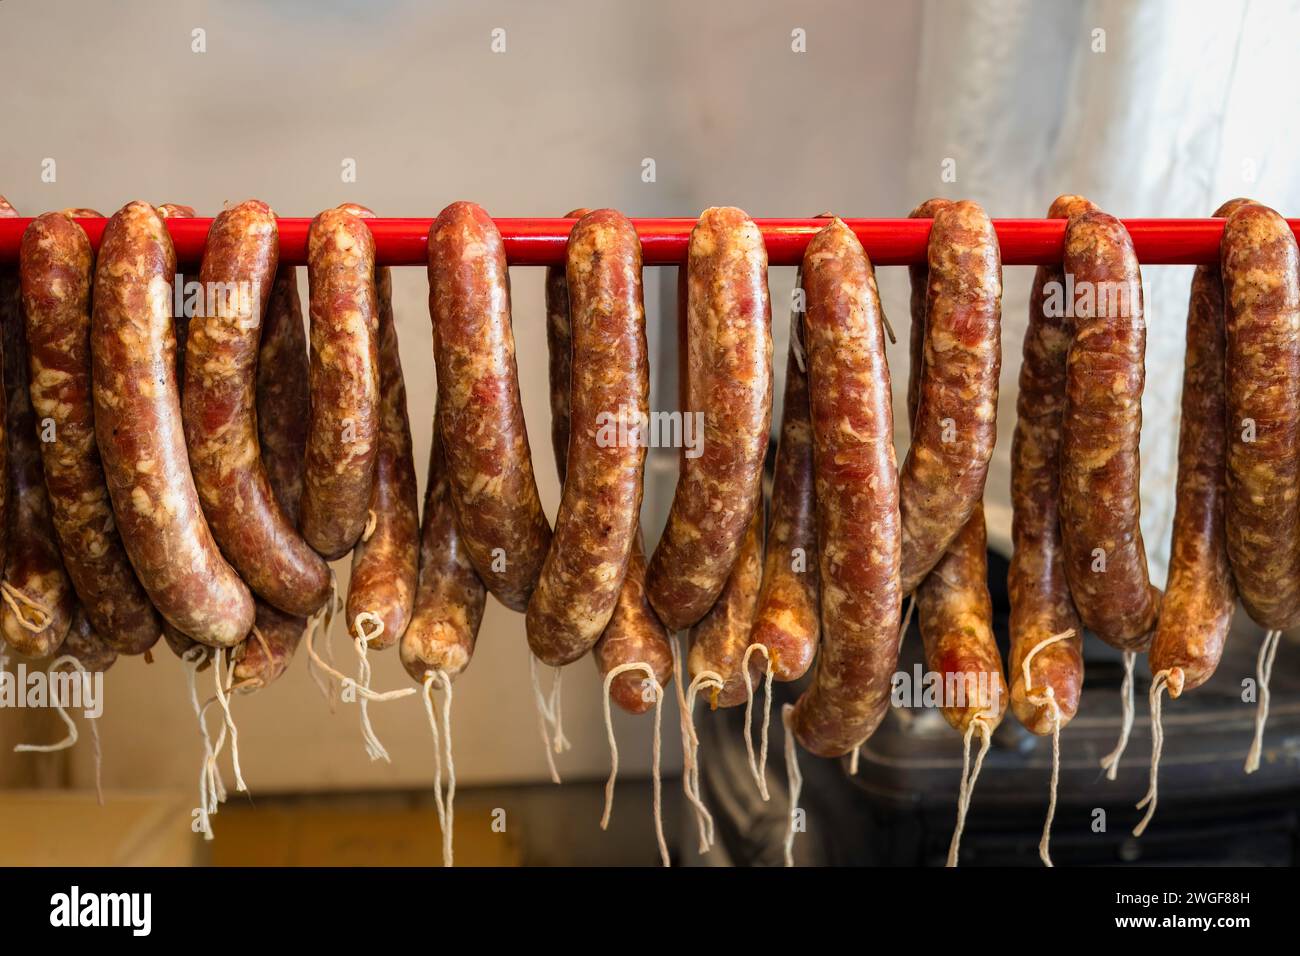 Nourriture traditionnelle. Saucisses crues suspendues et préparées pour être fumées dans un fumoir domestique. Banque D'Images